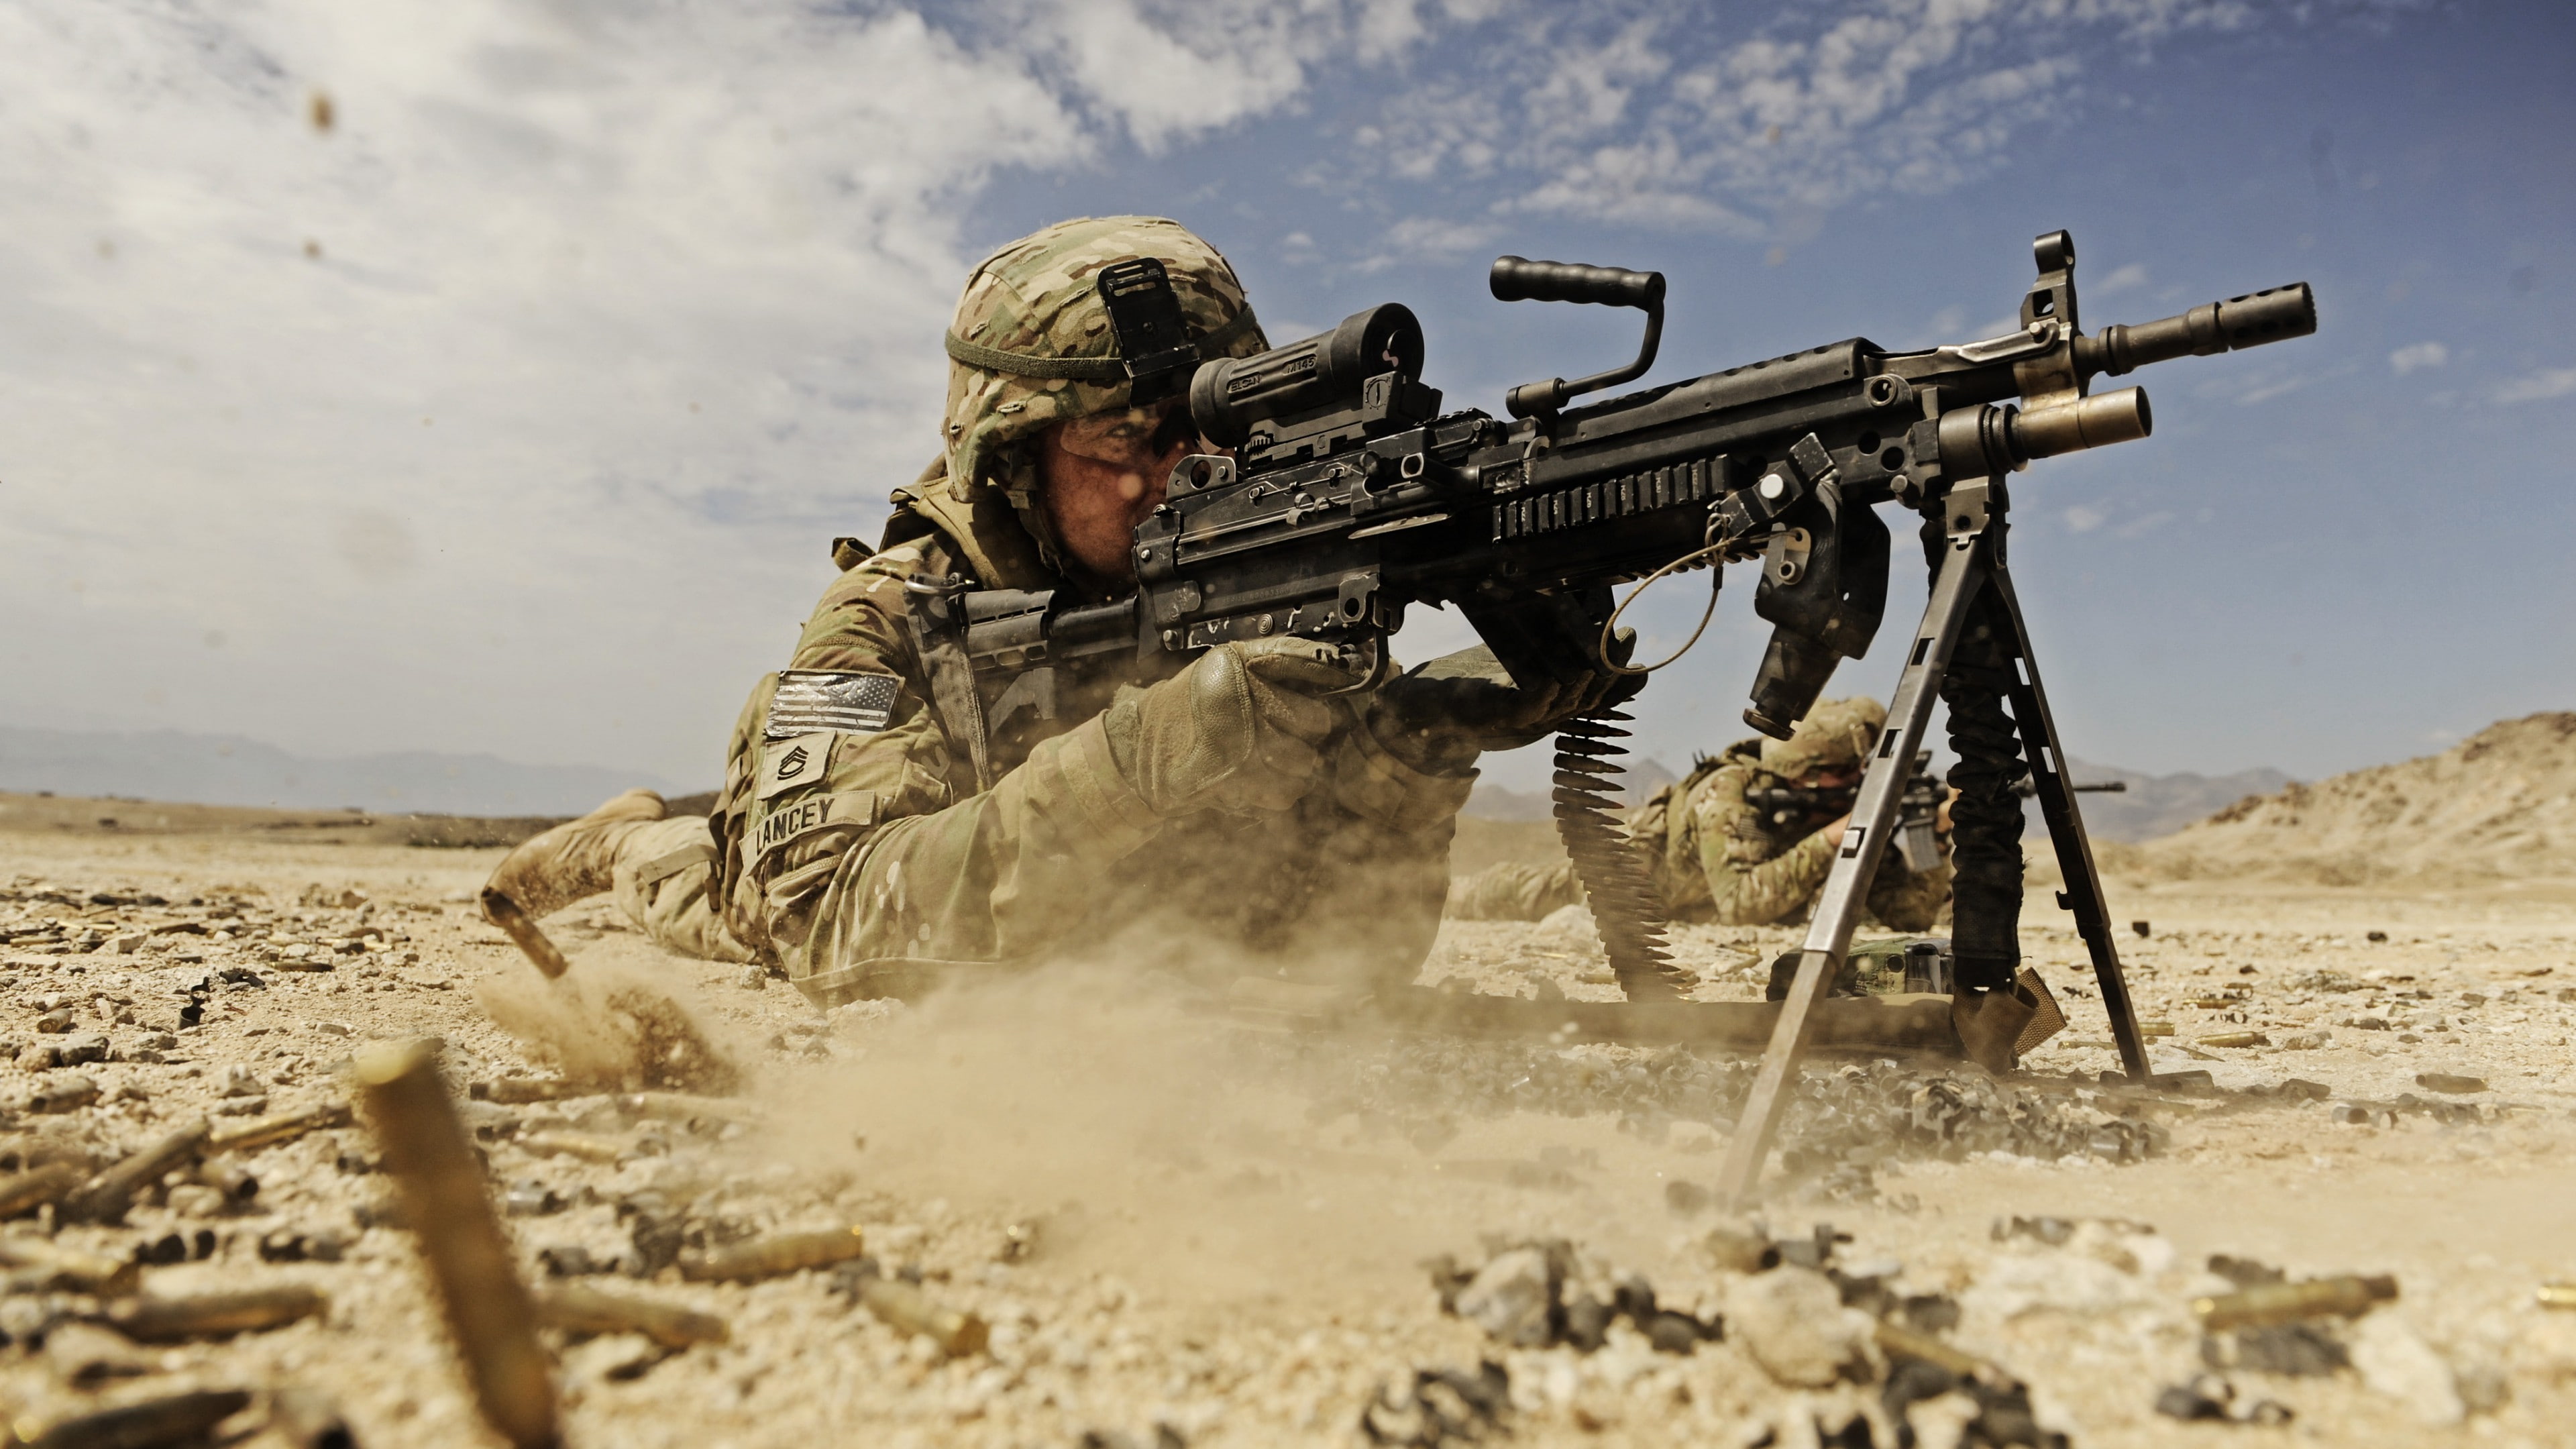 soldier, M249 LMG machine gun U.S. Army, firing, dust, sand